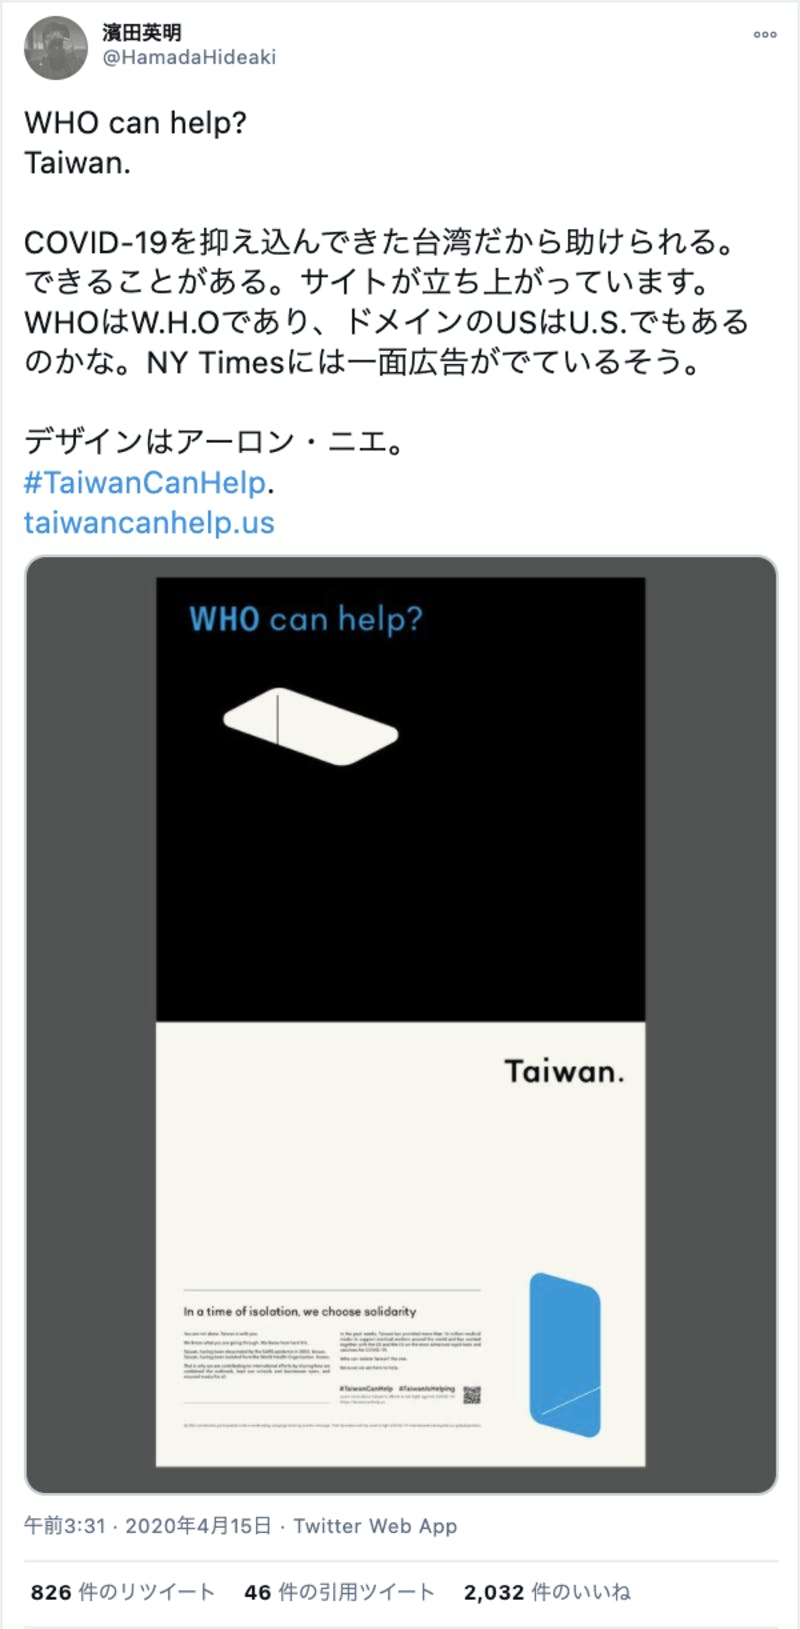 WHO can help? Taiwan.